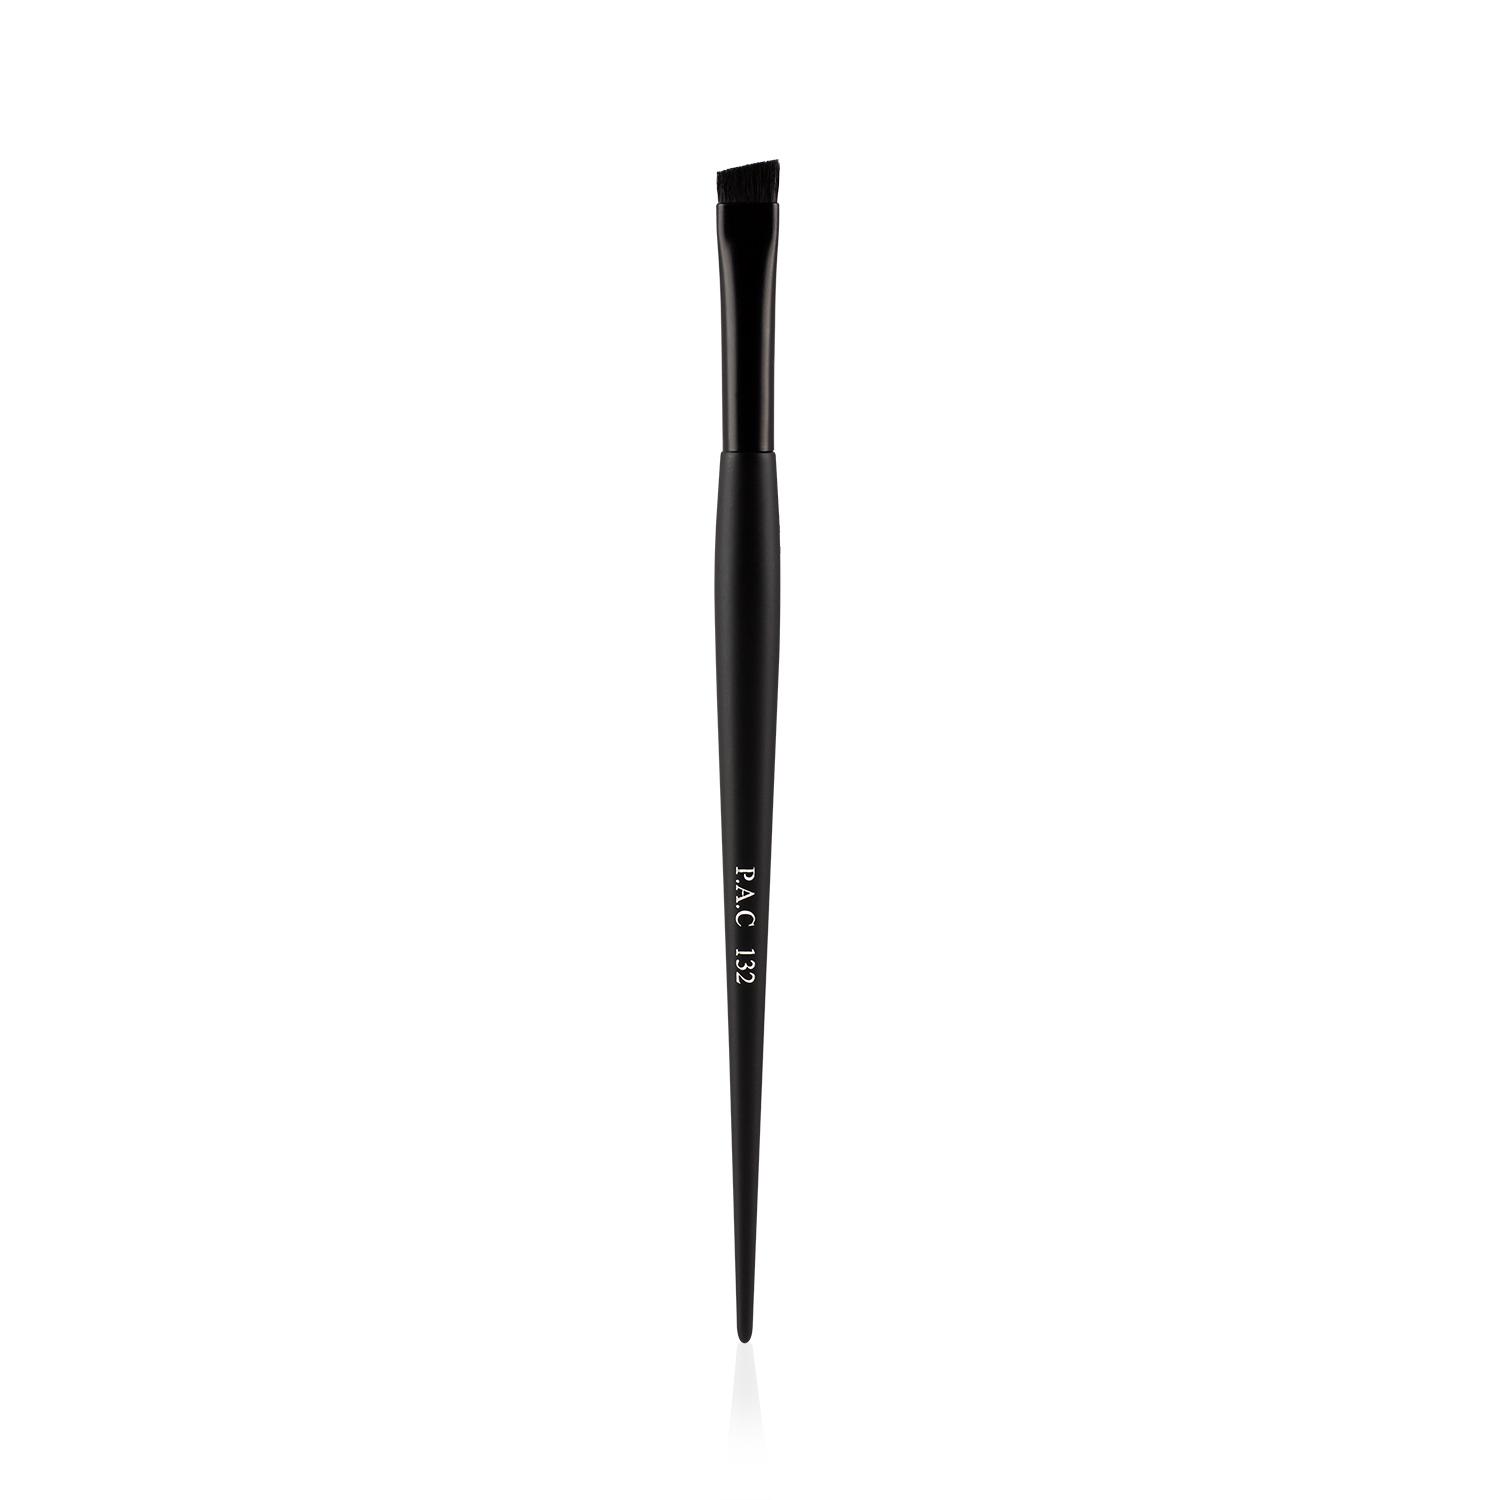 PAC | PAC Eyebrow Brush - 132 (1Pc)